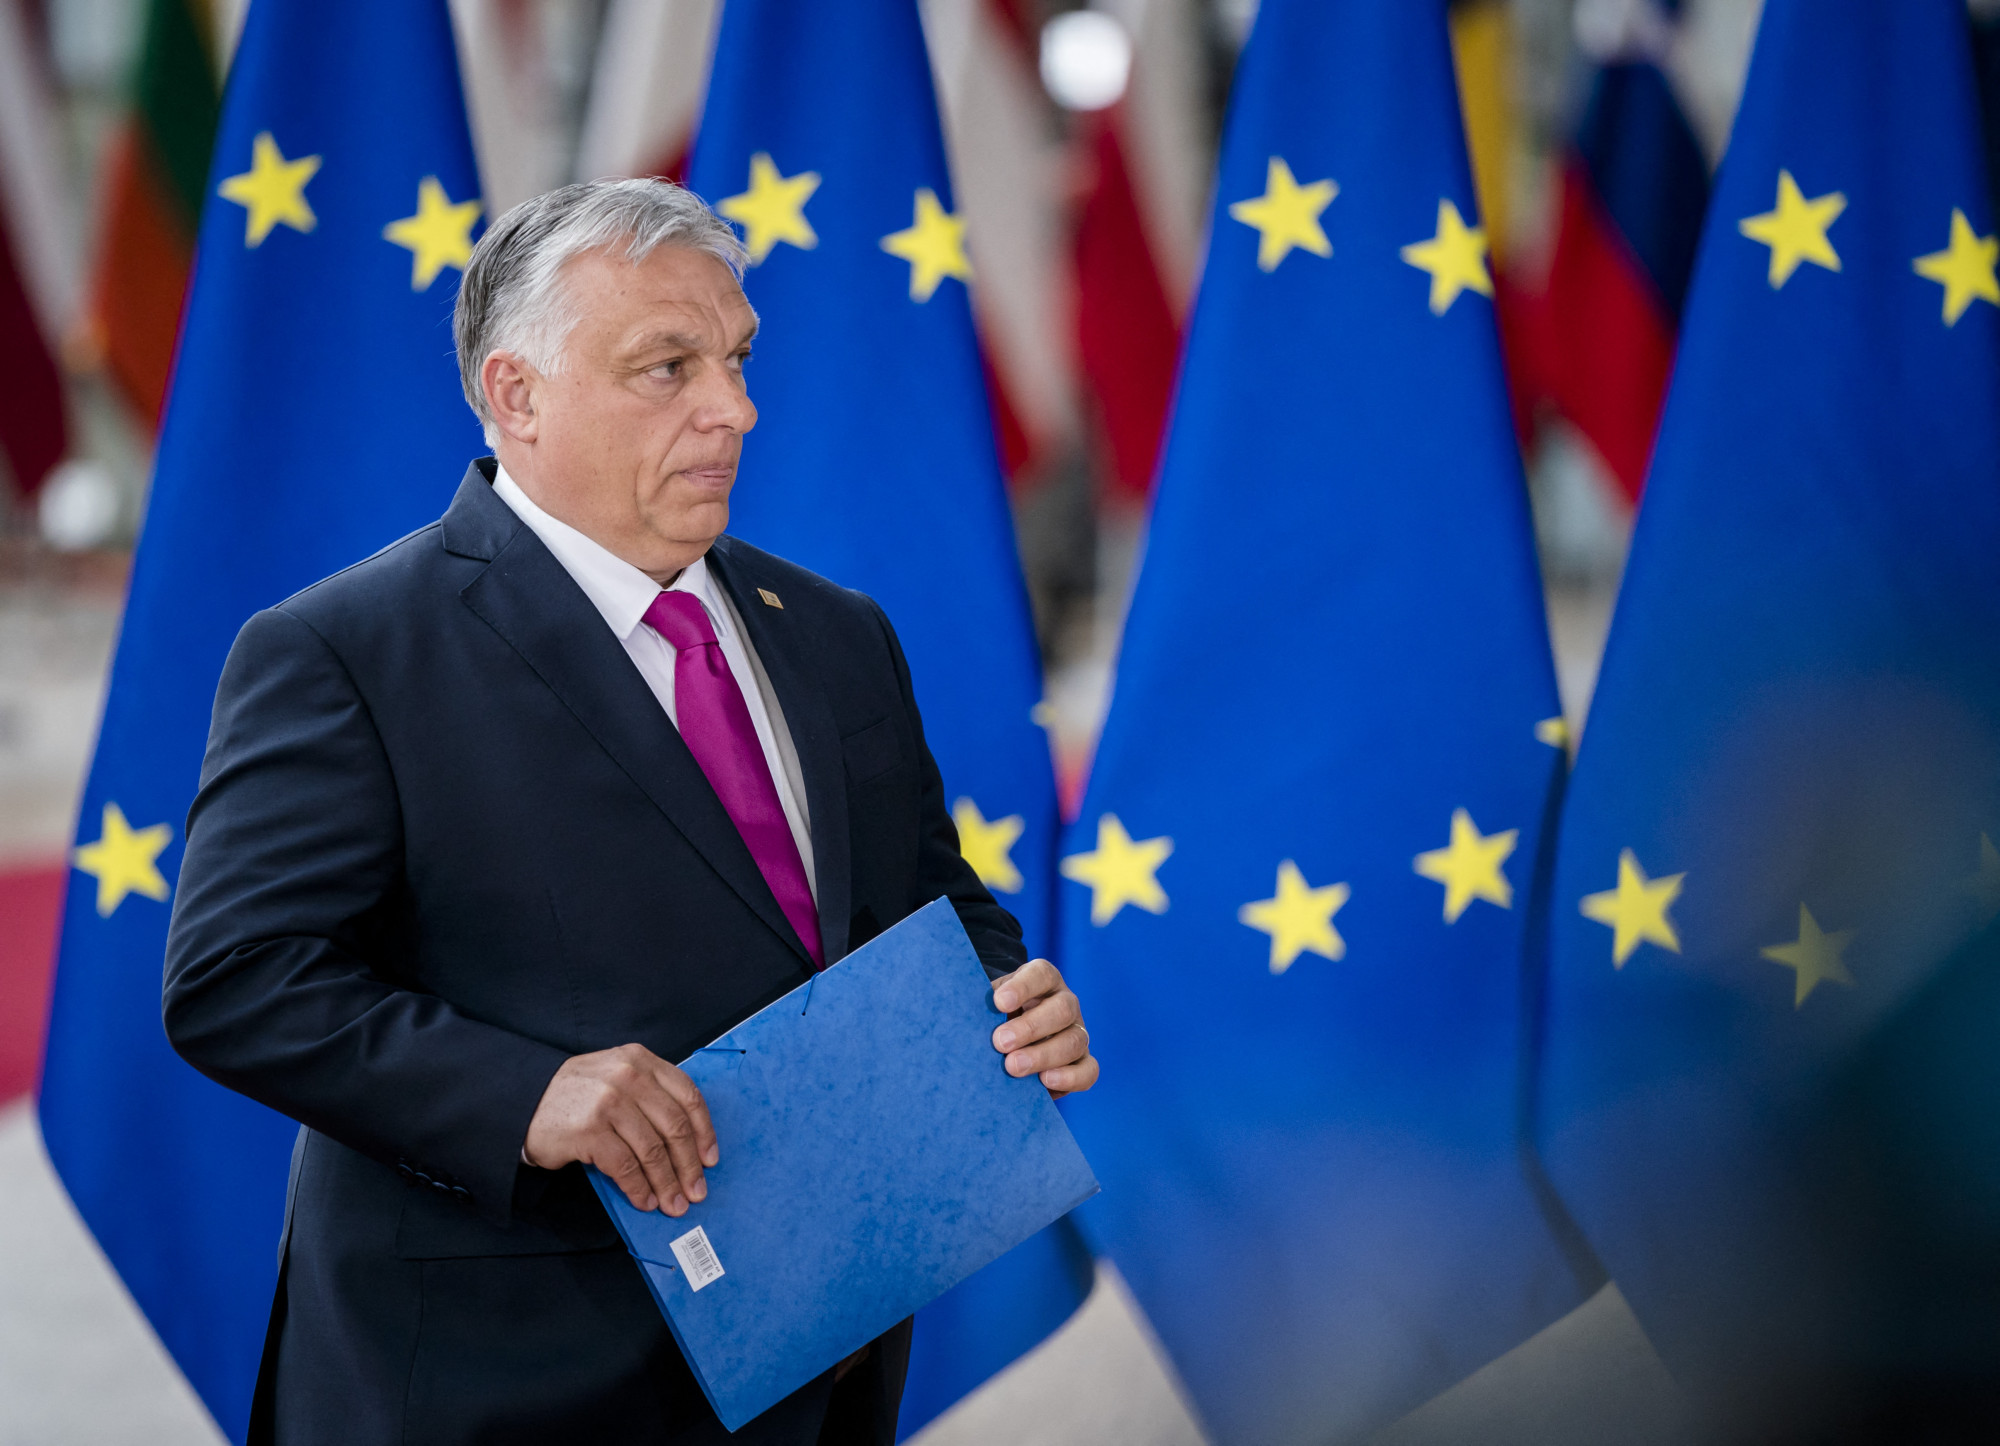 Rendszerszintű bajok vannak Magyarországgal - hangzott el az EP-vitán